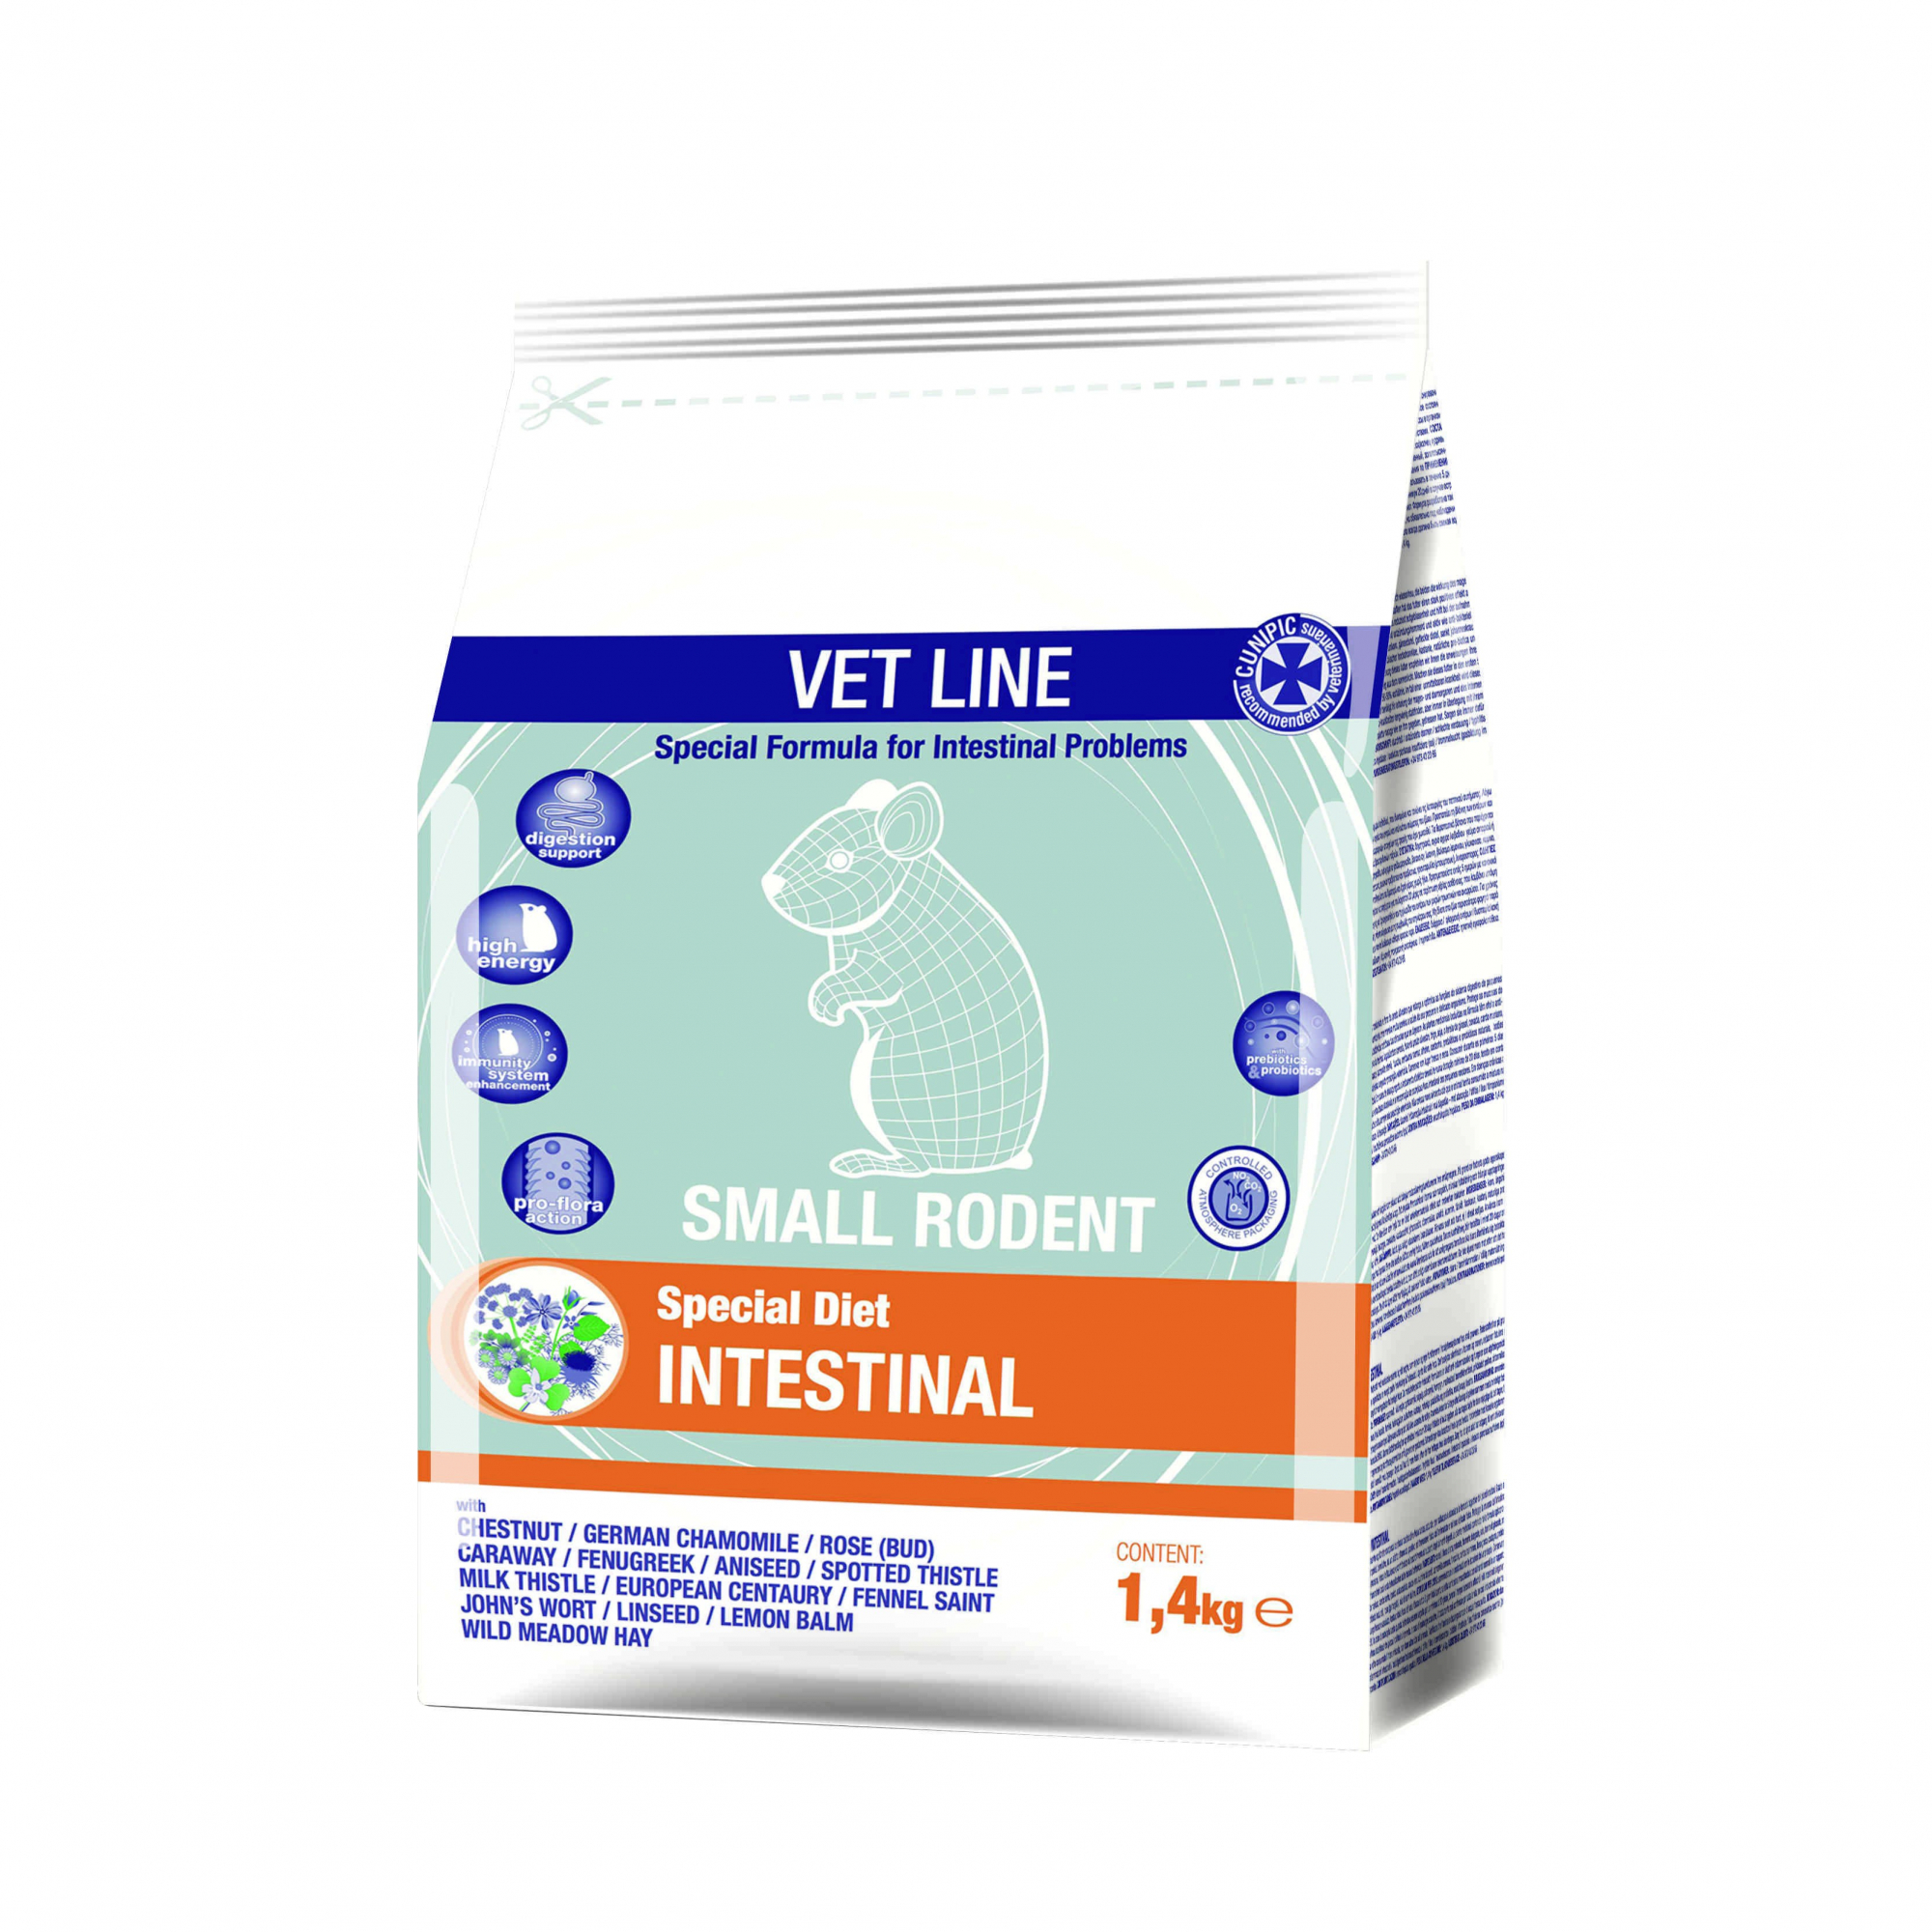 Cunipic Vetline Intestinal para pequeños roedores con problemas intestinales